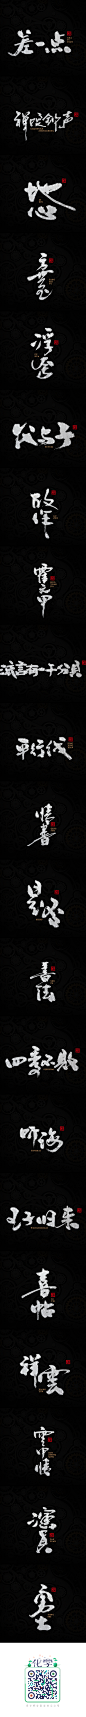 墨 · 趣 · 叁_字体传奇网-中国首个字体品牌设计师交流网 #字体#